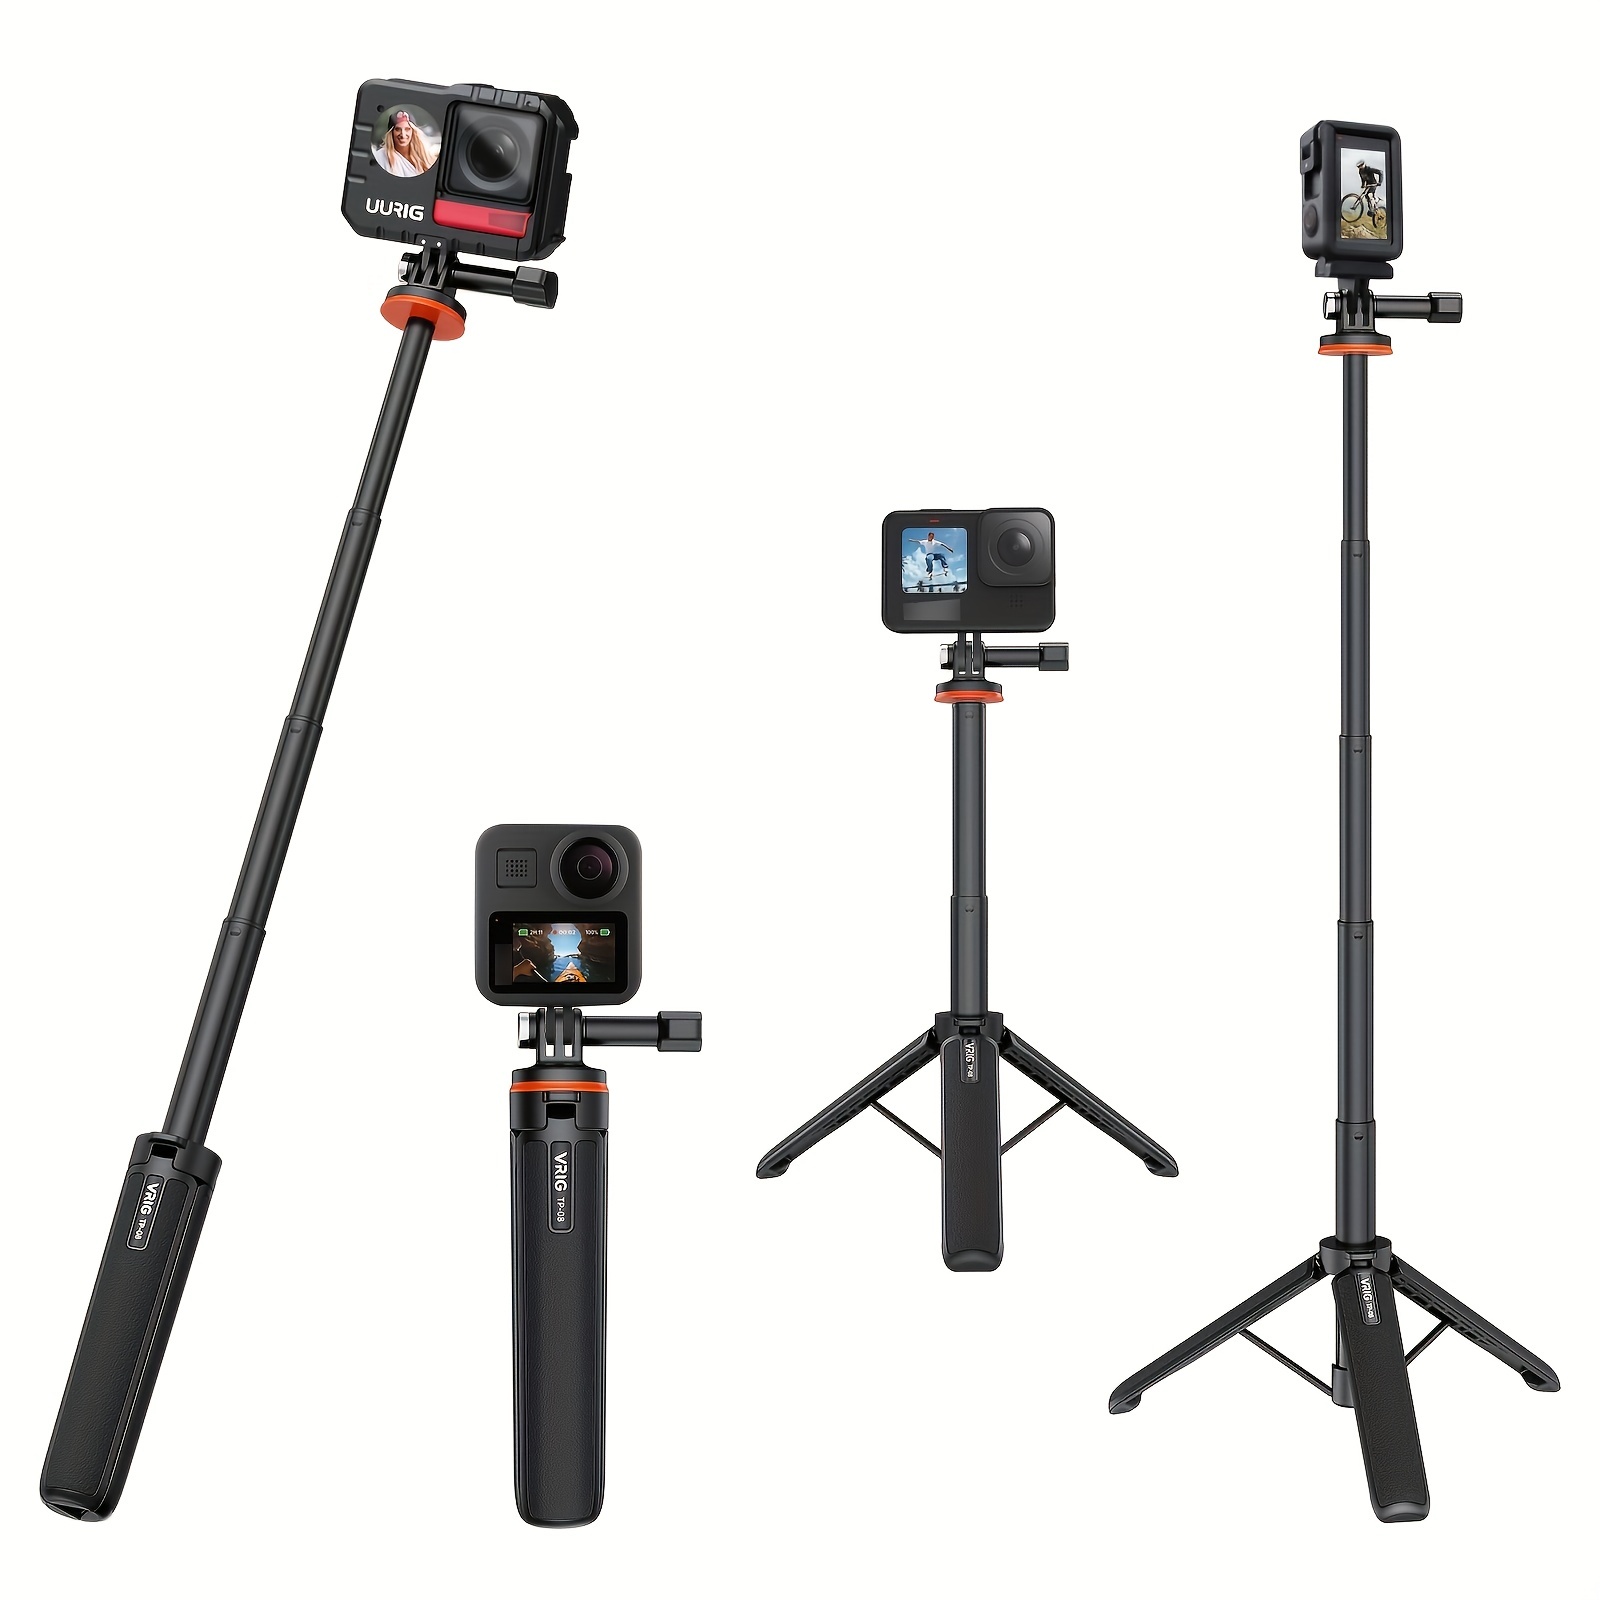 Trípode Selfie Stick Extensible Para Insta360 X3 Accesorio Para Max Hero 10  9 8 7 6 5 4, DJI Osmo Action, Insta 360 One R Y Más Cámara De